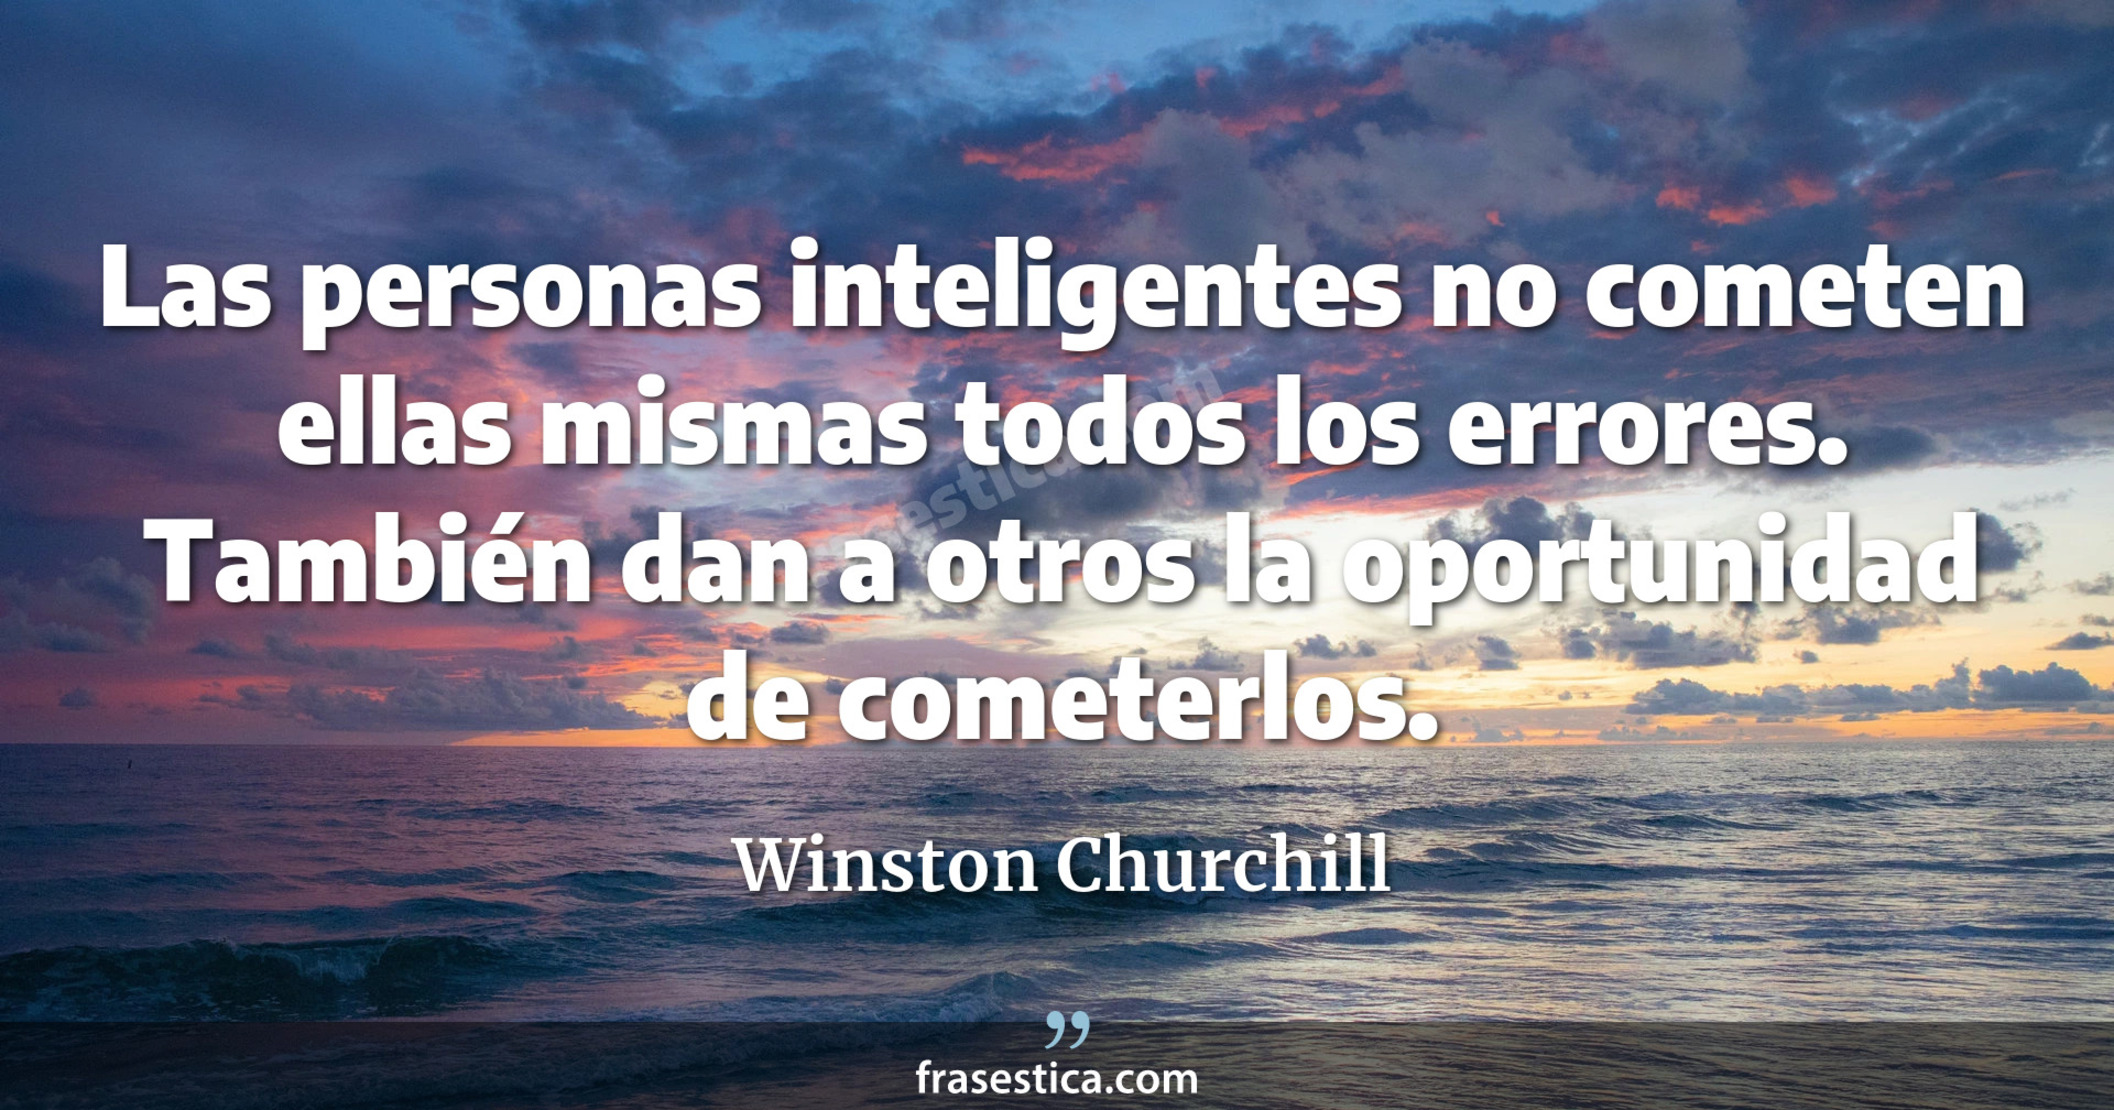 Las personas inteligentes no cometen ellas mismas todos los errores. También dan a otros la oportunidad de cometerlos. - Winston Churchill